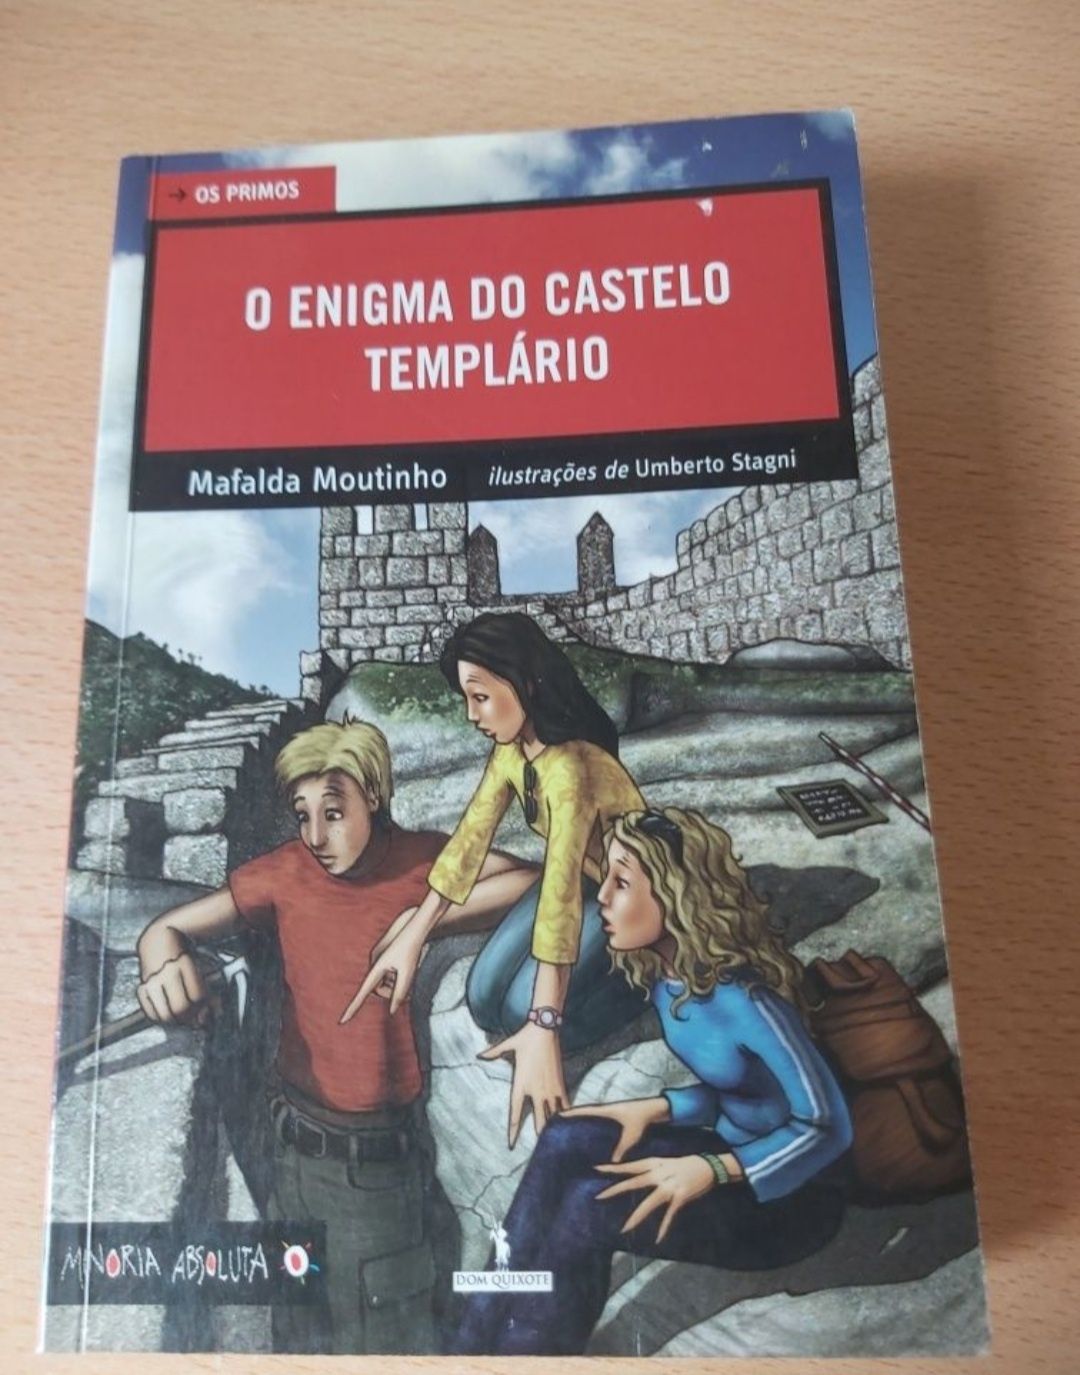 Livro "O Enigma do Castelo Templário" / Os Primos - Mafalda Moutinho